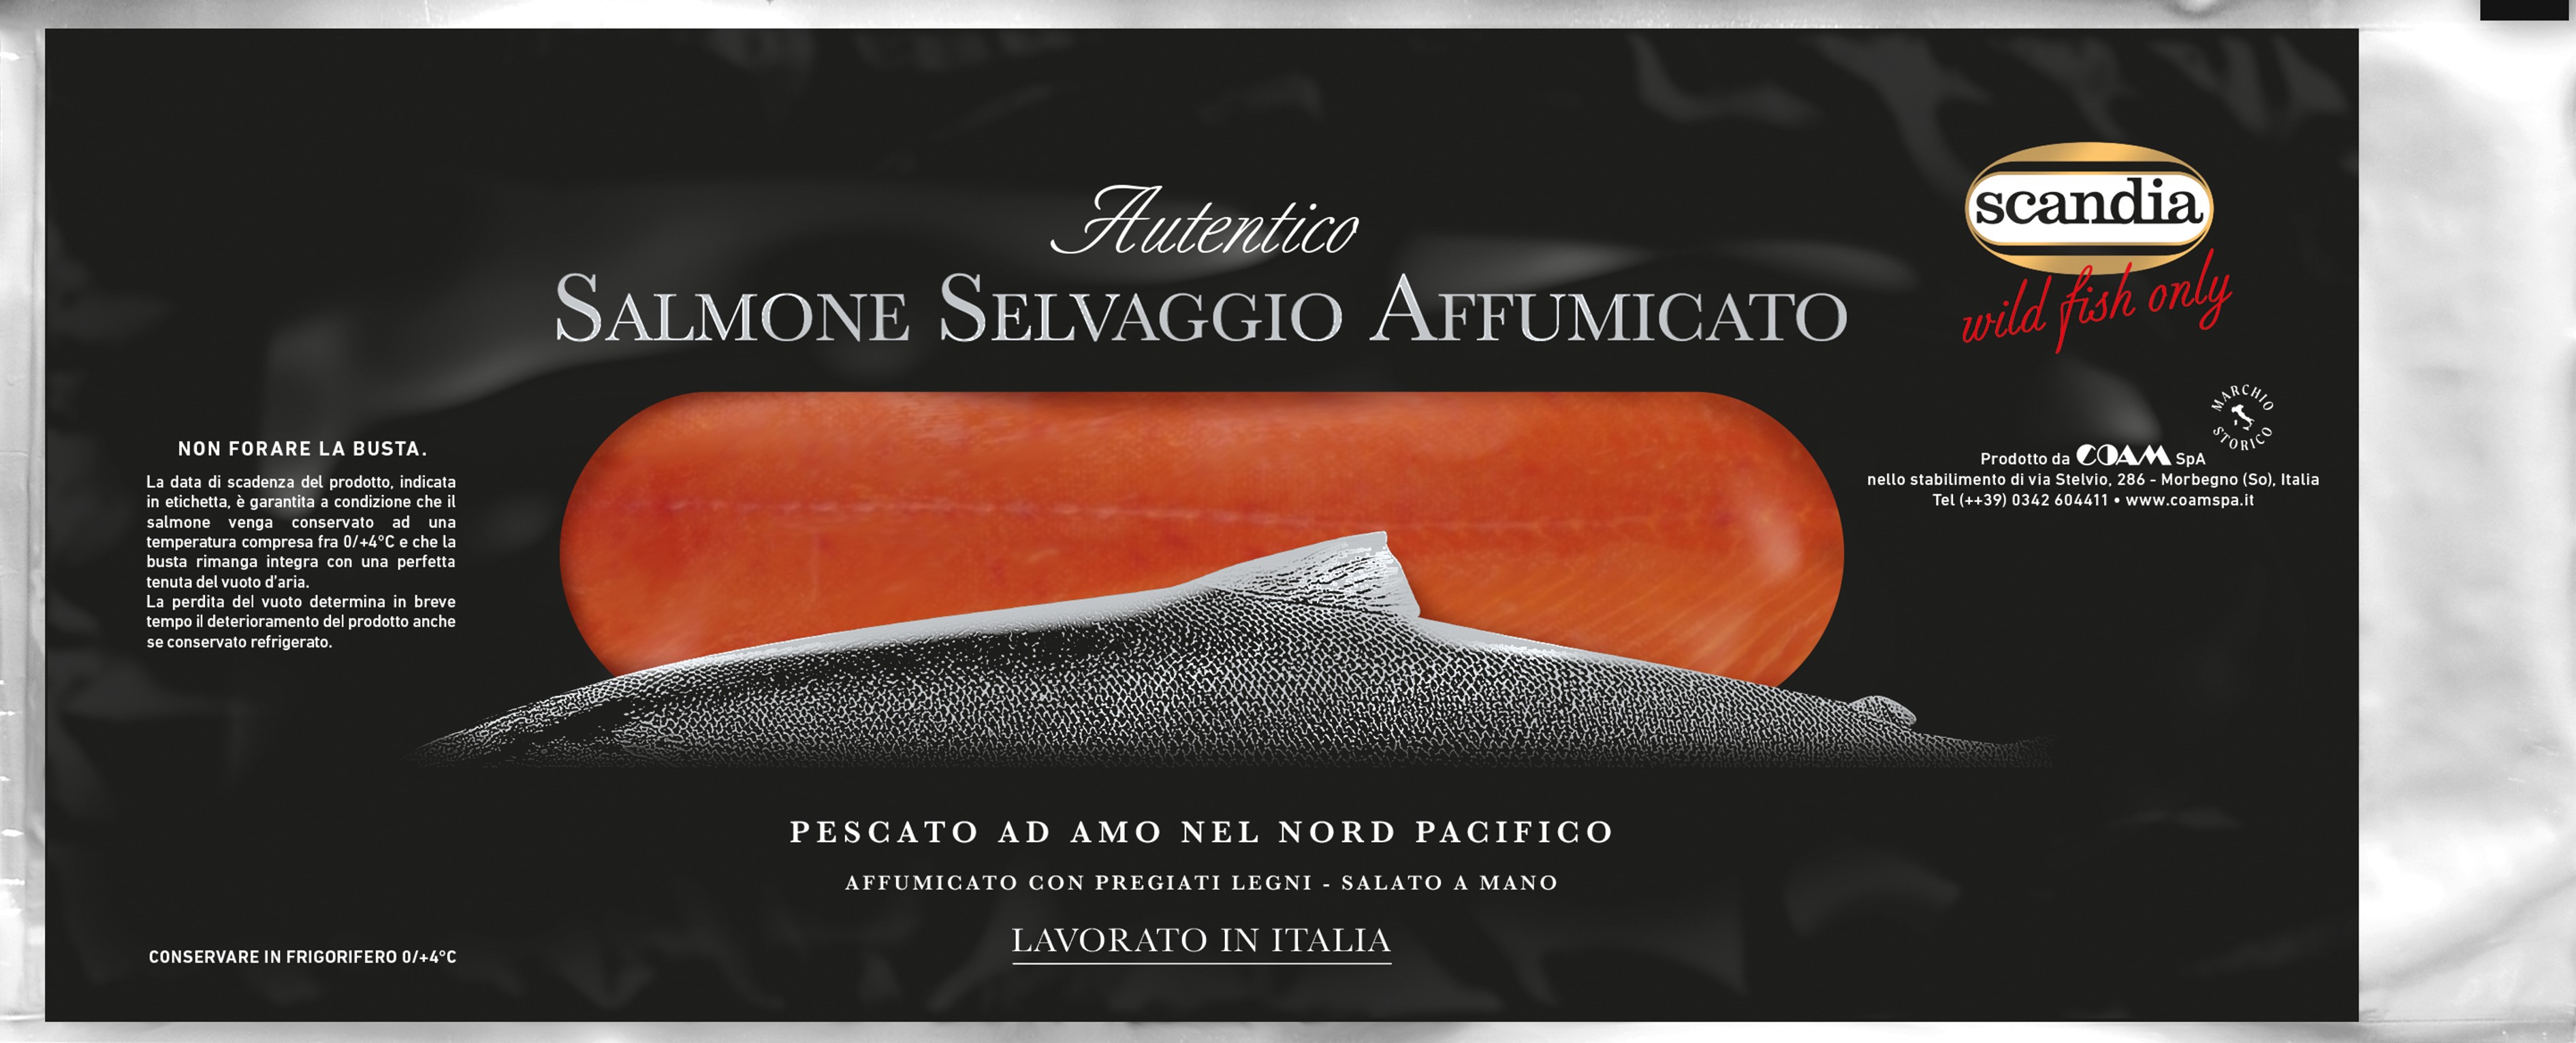 Salmone Argentato Selvaggio affumicato affettato- Busta 300g